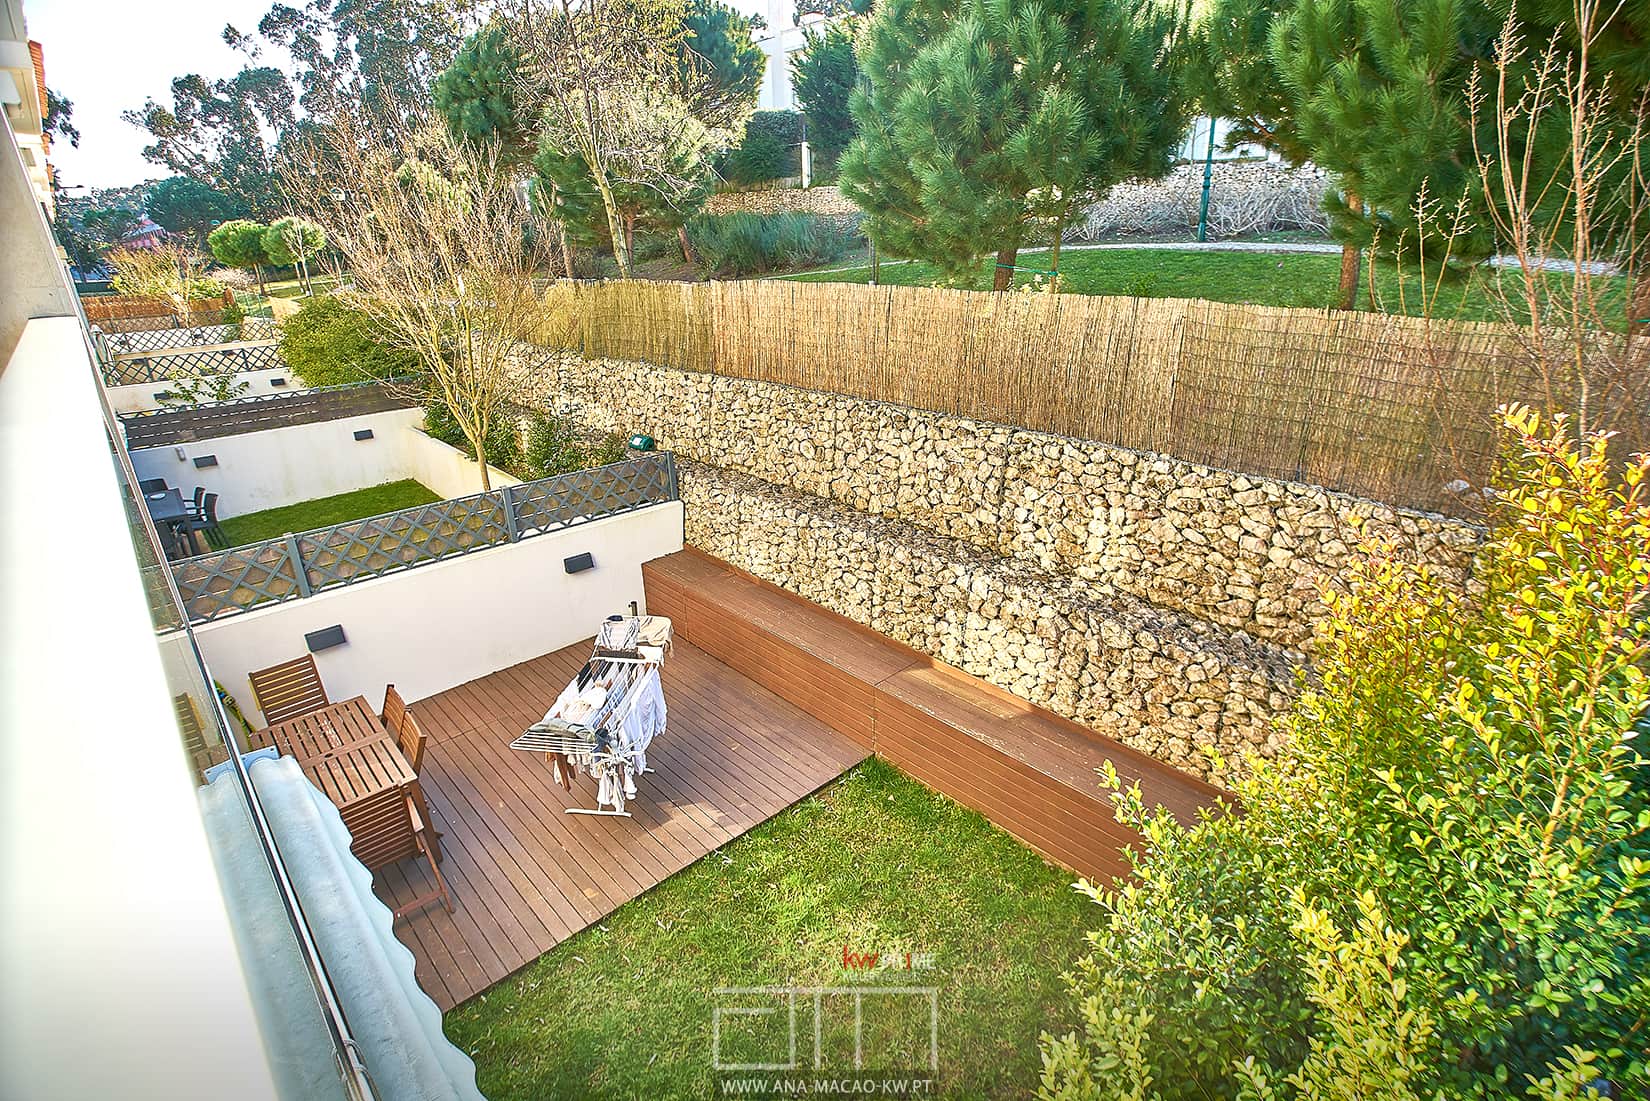 Deck and outdoor garden